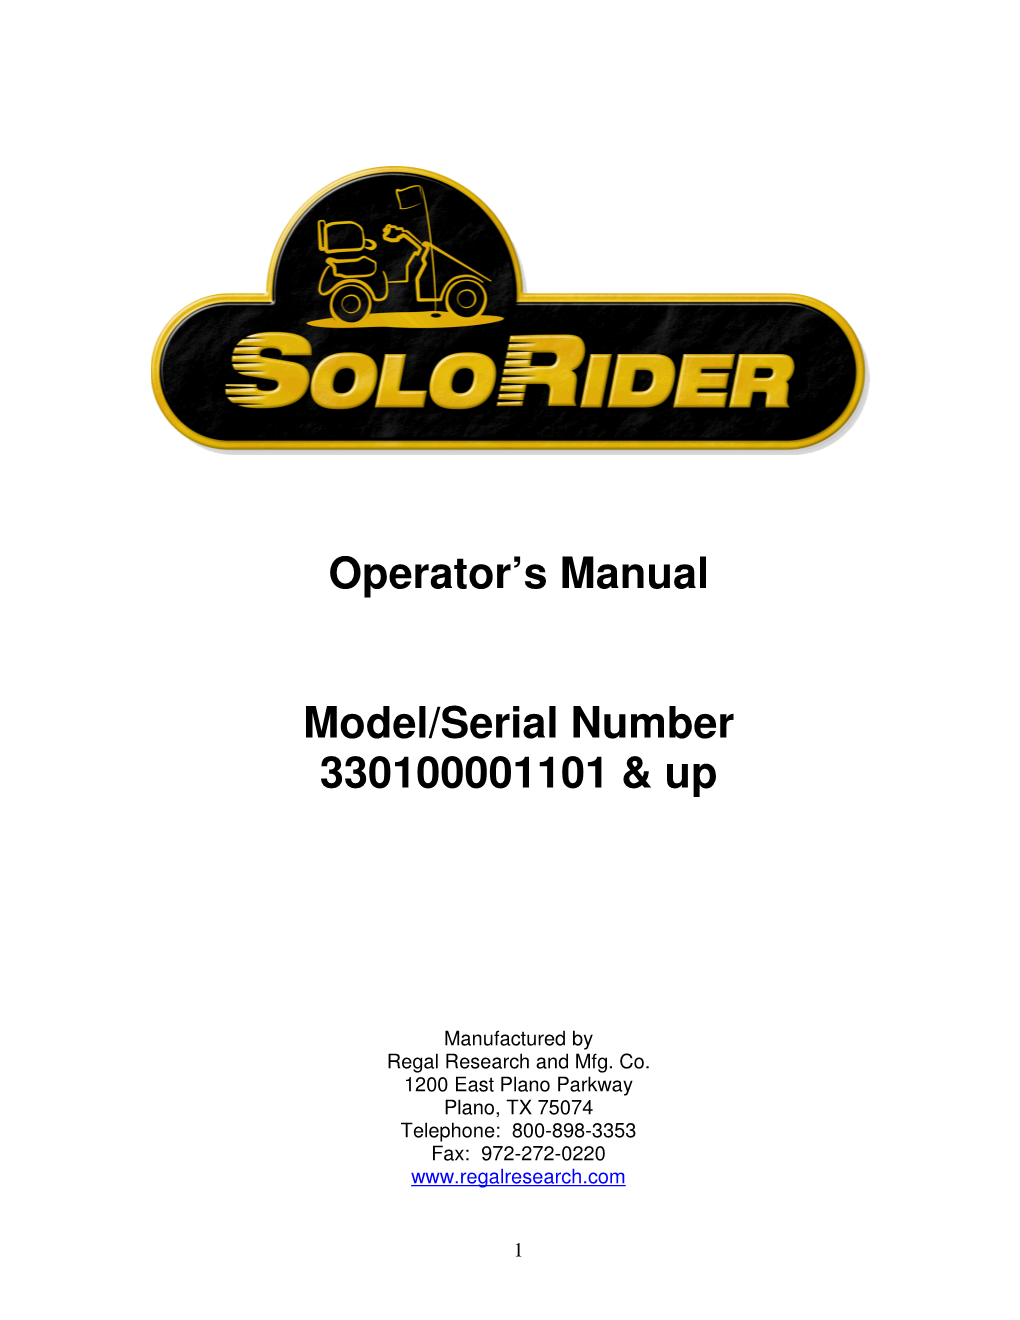 Operator's Manual Model/Serial Number 330100001101 & Up